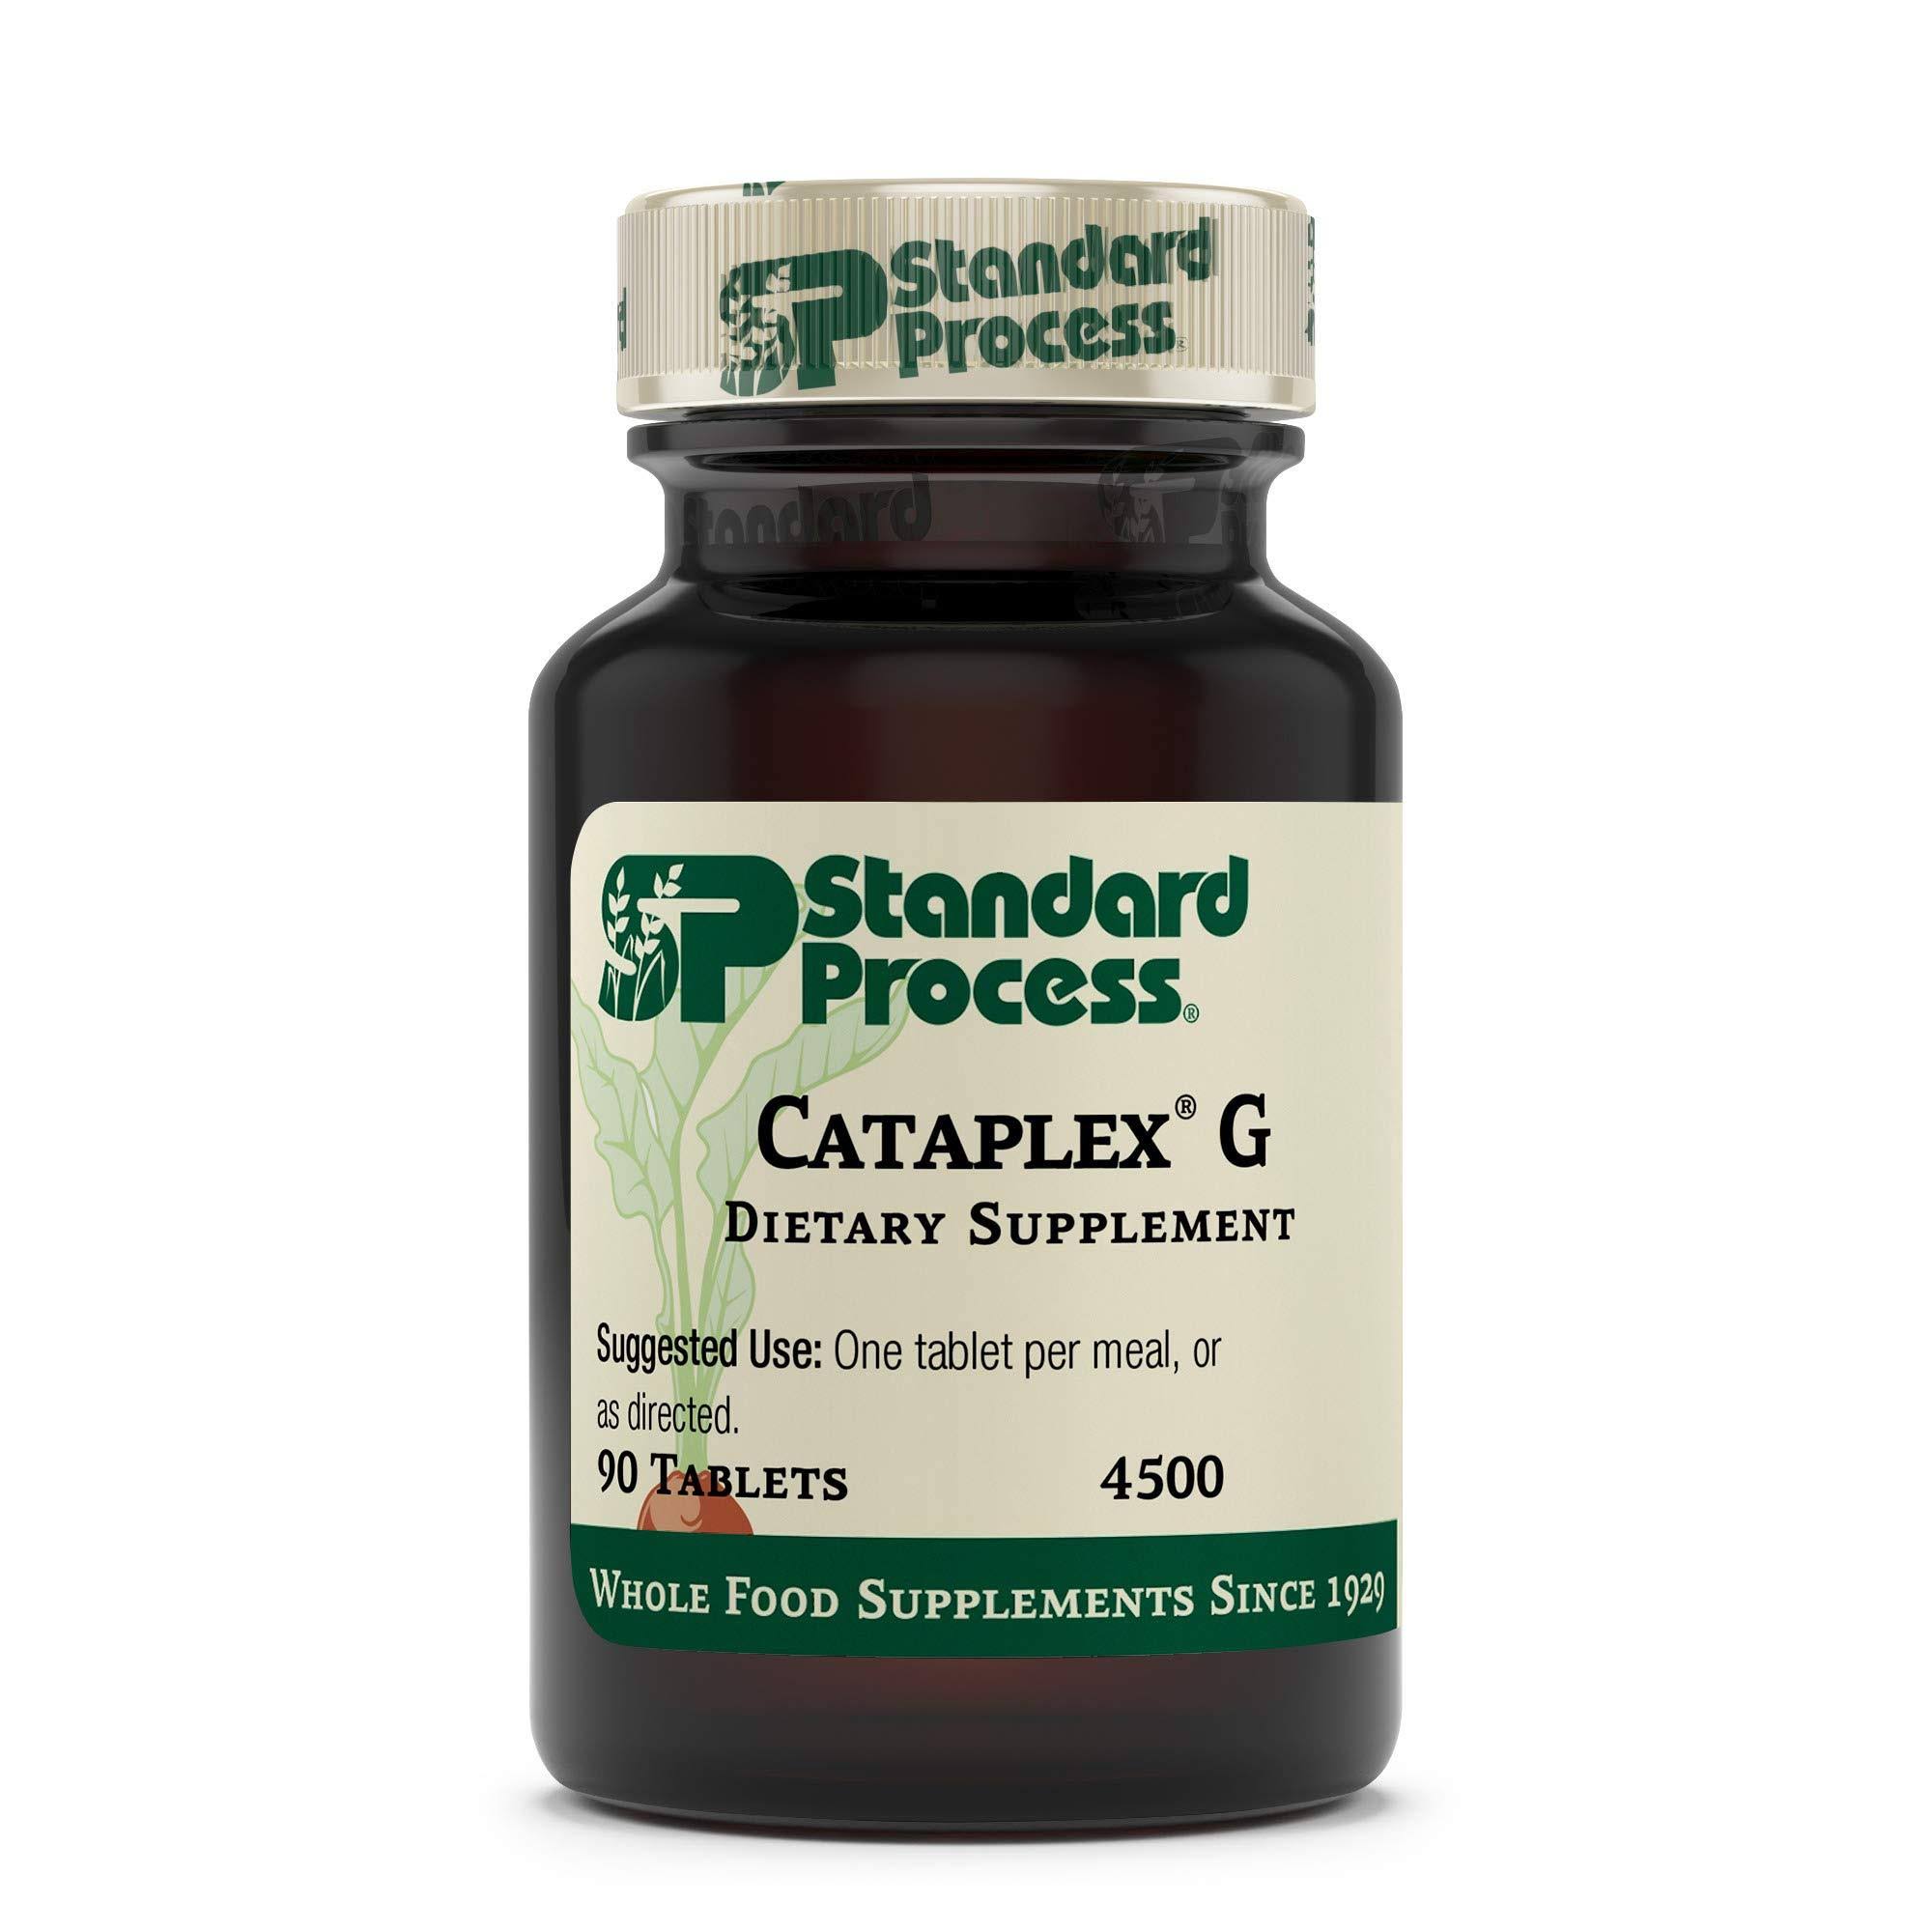 Standard Process Cataplex G Dietary Supplement - 90 Tablets